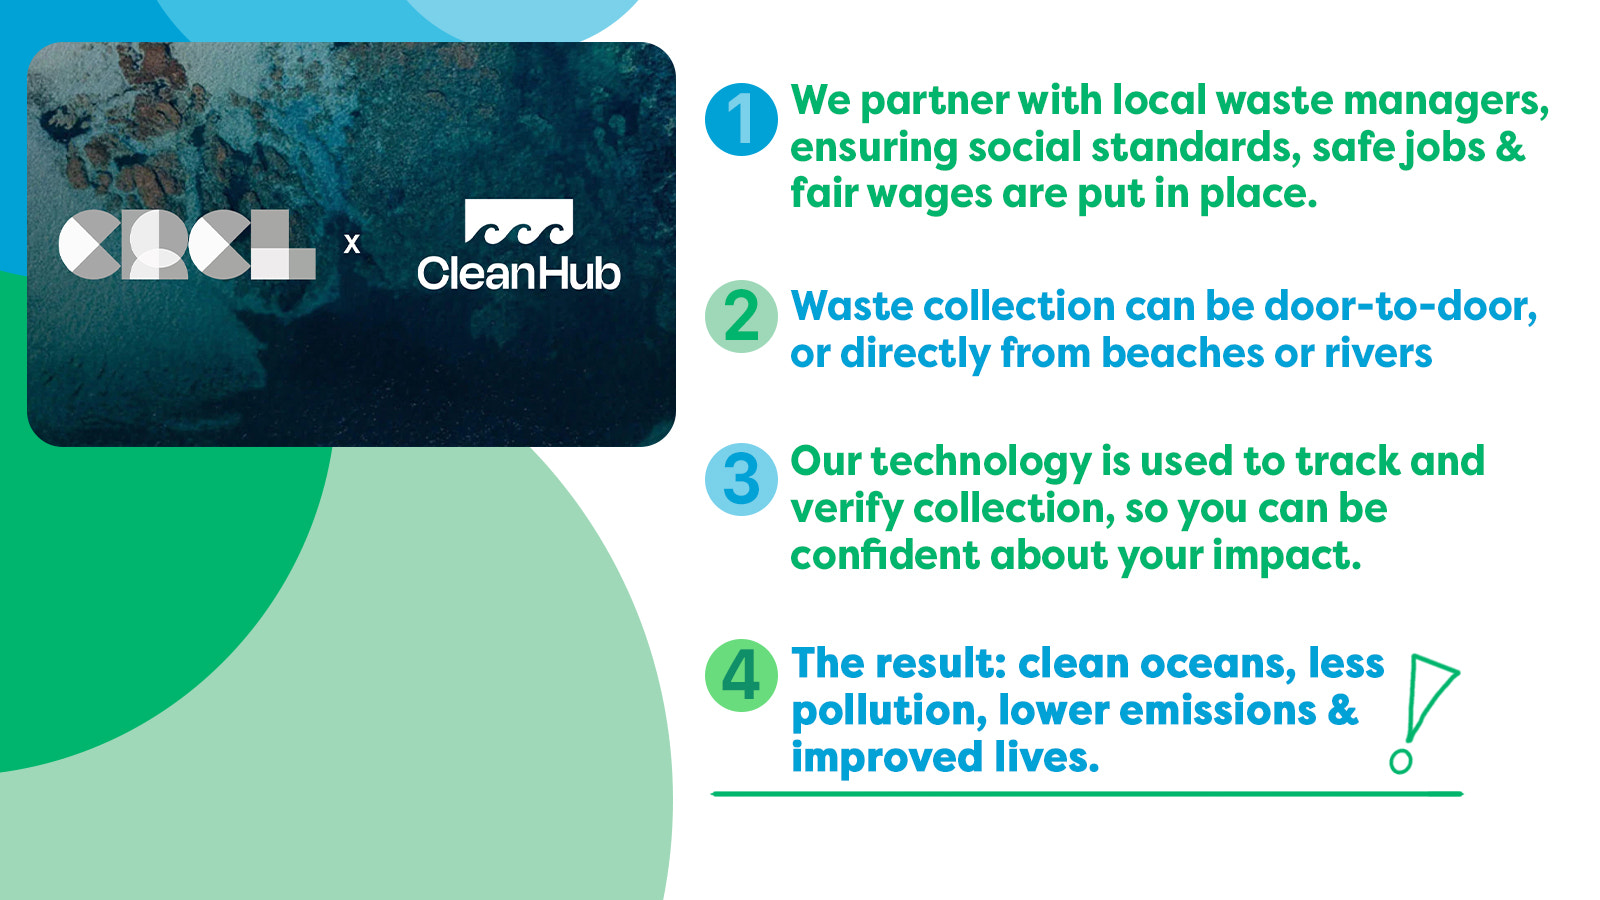 CRCL x Cleanhub Partnership